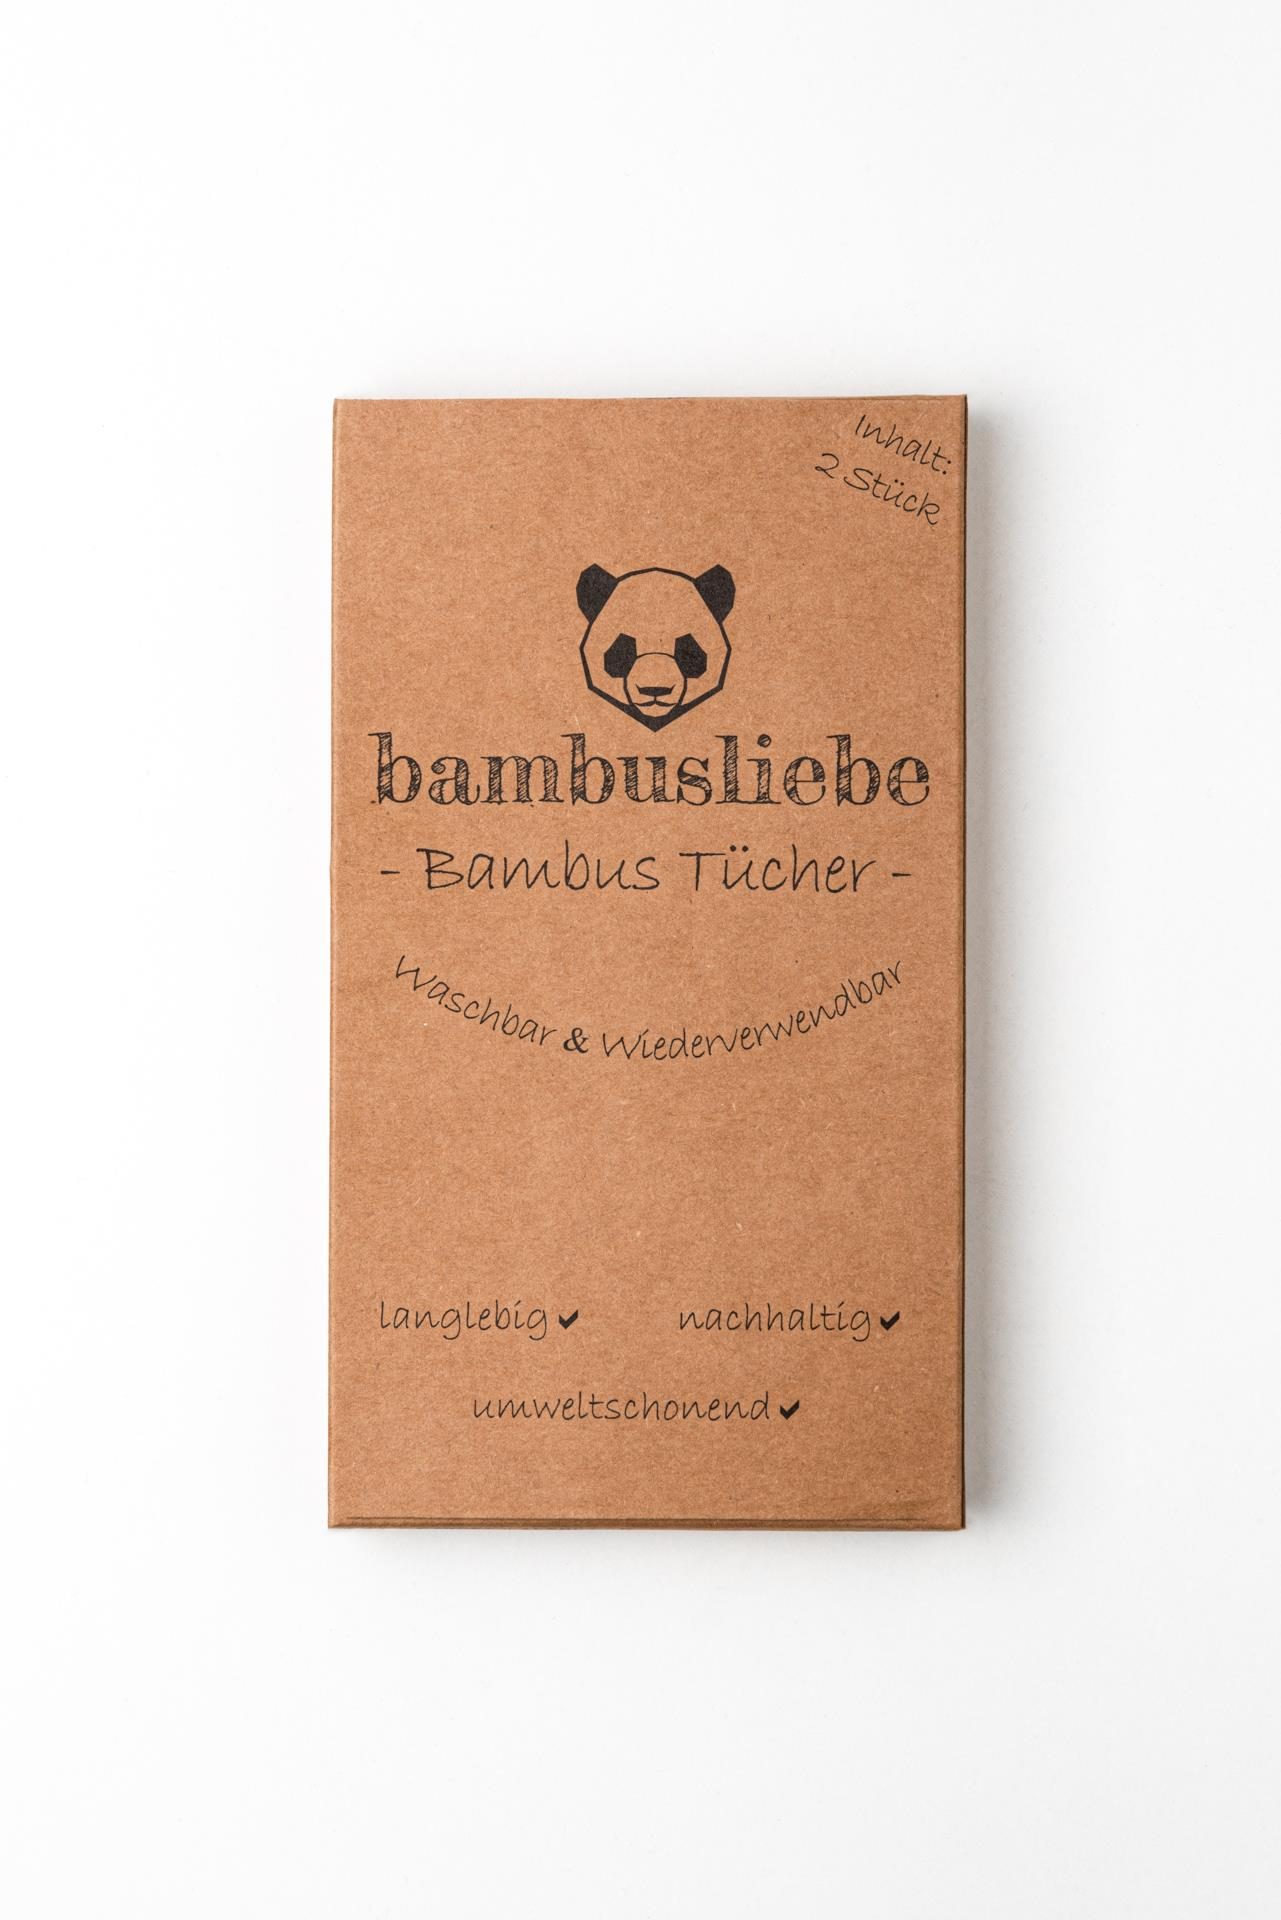 wiederverwendbare Putztücher bambusliebe Produktbild